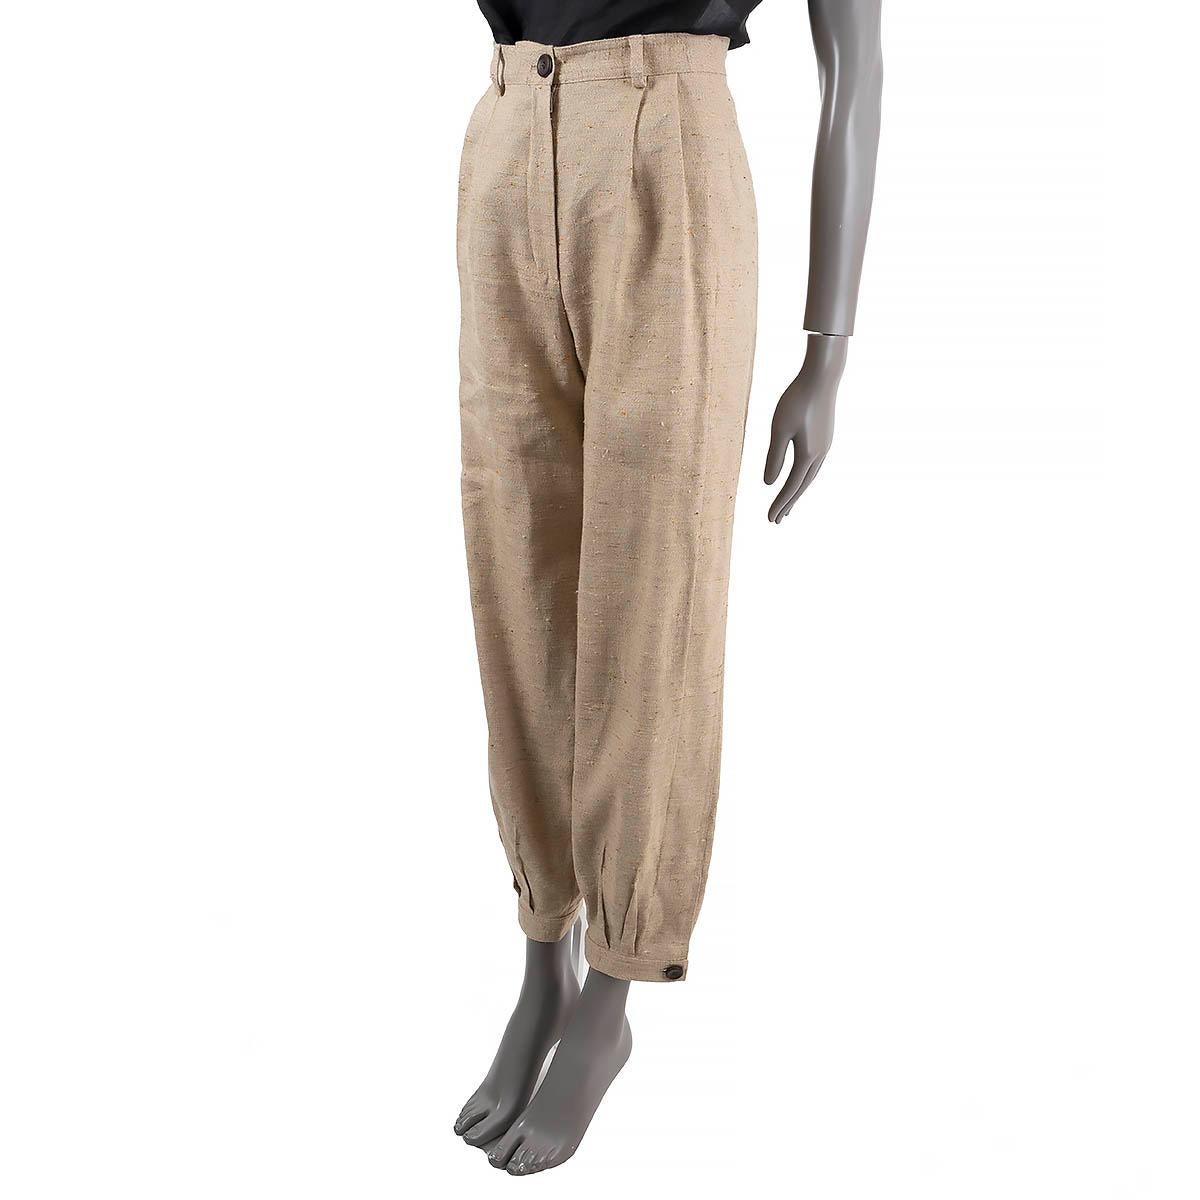 100% authentique Loro Piana Pantalon plissé en tweed Phyllis en lin beige (61%), cachemire (20%) et soie (19%). Il est doté de deux poches en biais, de poignets à boutons effilés et de passants de ceinture. Non doublé. Ils ont été portés et sont